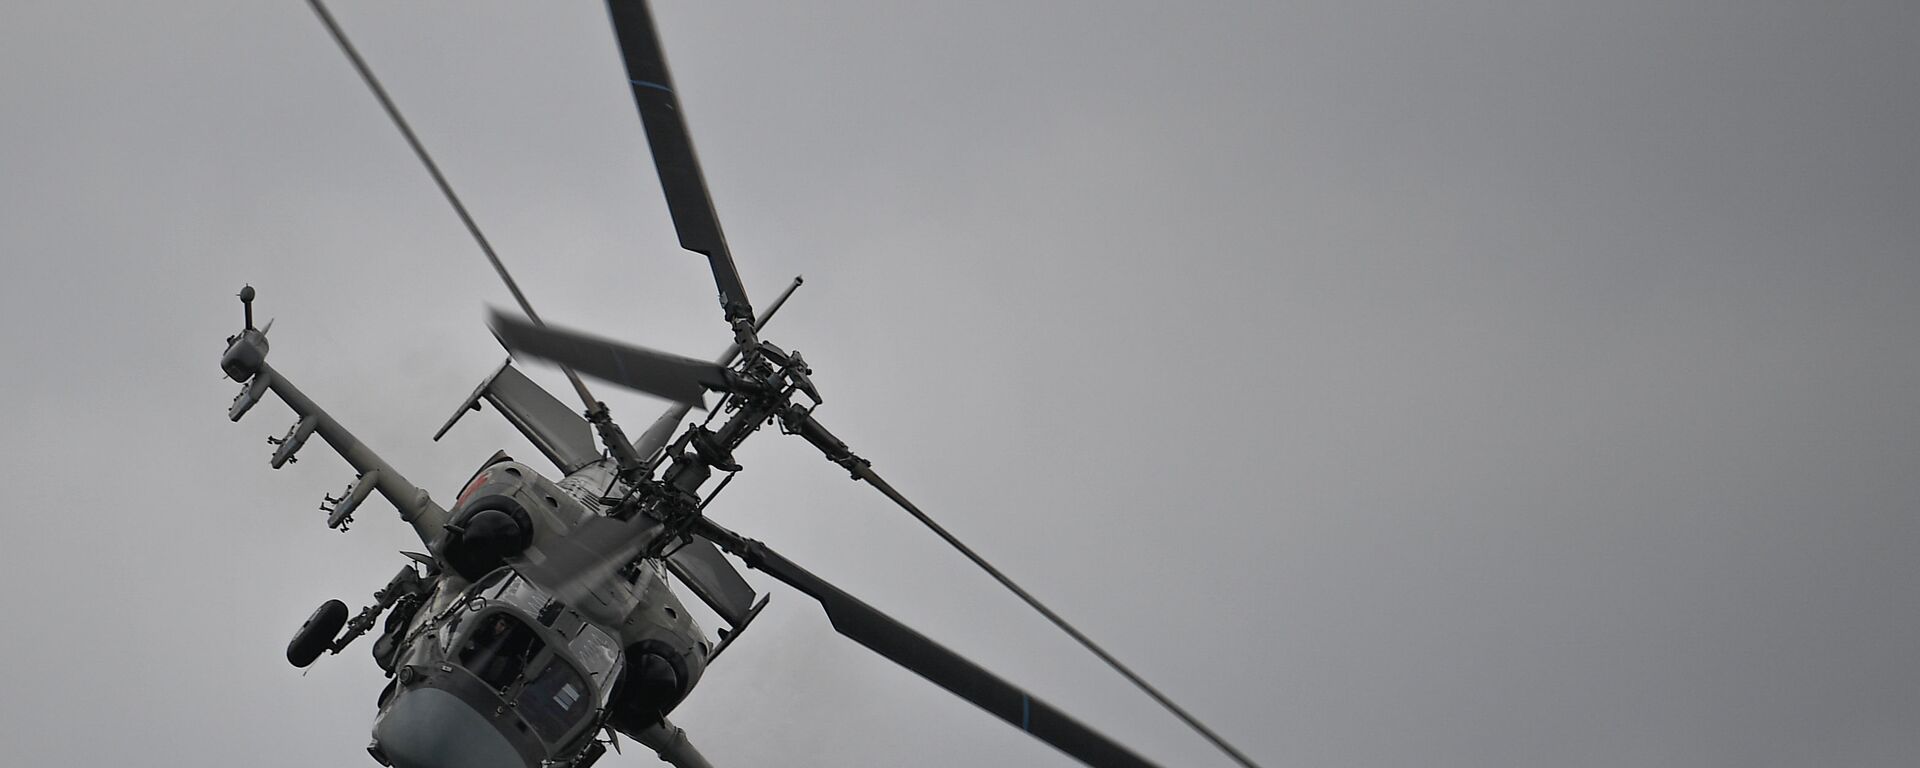 Ударный вертолет Ка-52 Аллигатор выполняет демонстрационный полет в рамках Международного форума Армия-2020 на аэродроме Кубинка в Подмосковье - Sputnik Արմենիա, 1920, 24.09.2021